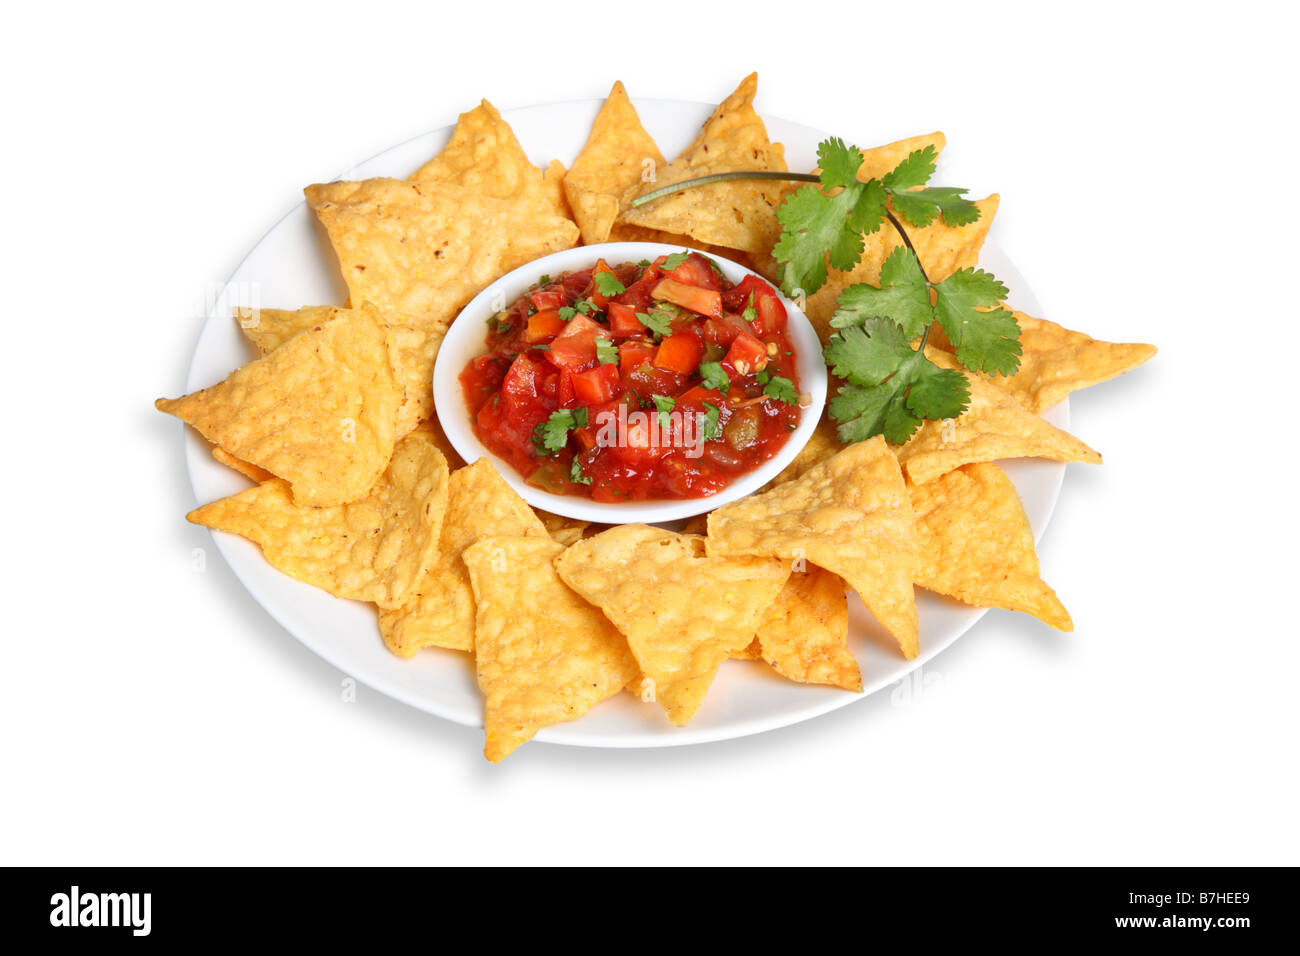 Piatto di tortilla chips e salsa ritagliata su sfondo bianco Foto Stock